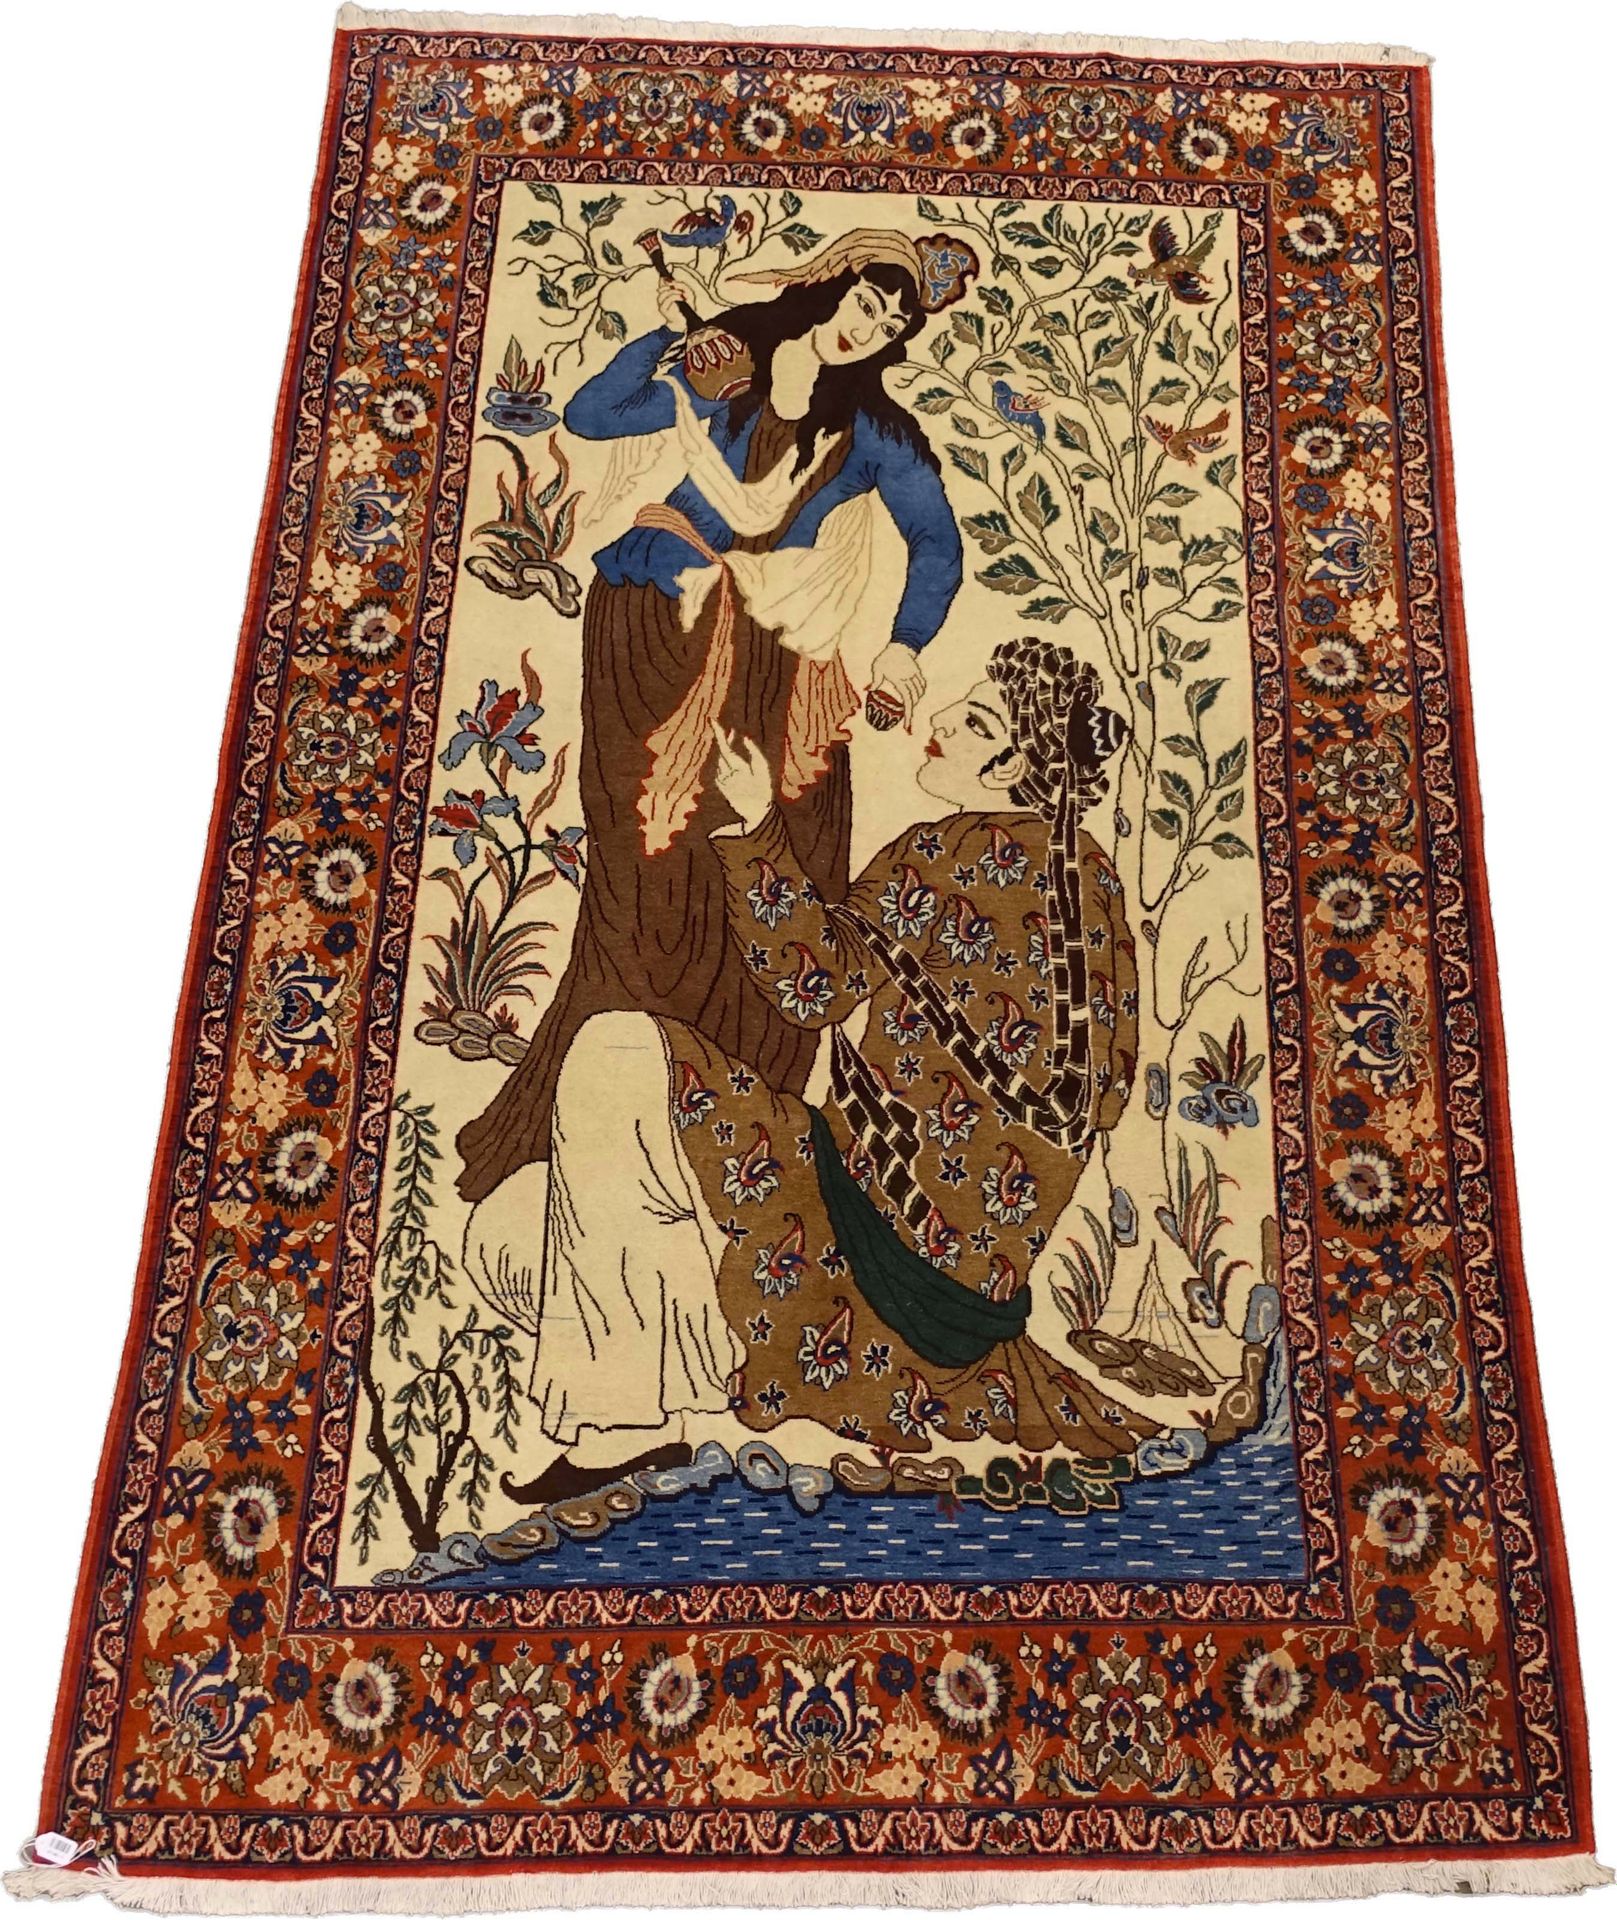 Carpette Ispahan figurative. Majnoun et Leila. Elle décrit la passion impossible&hellip;